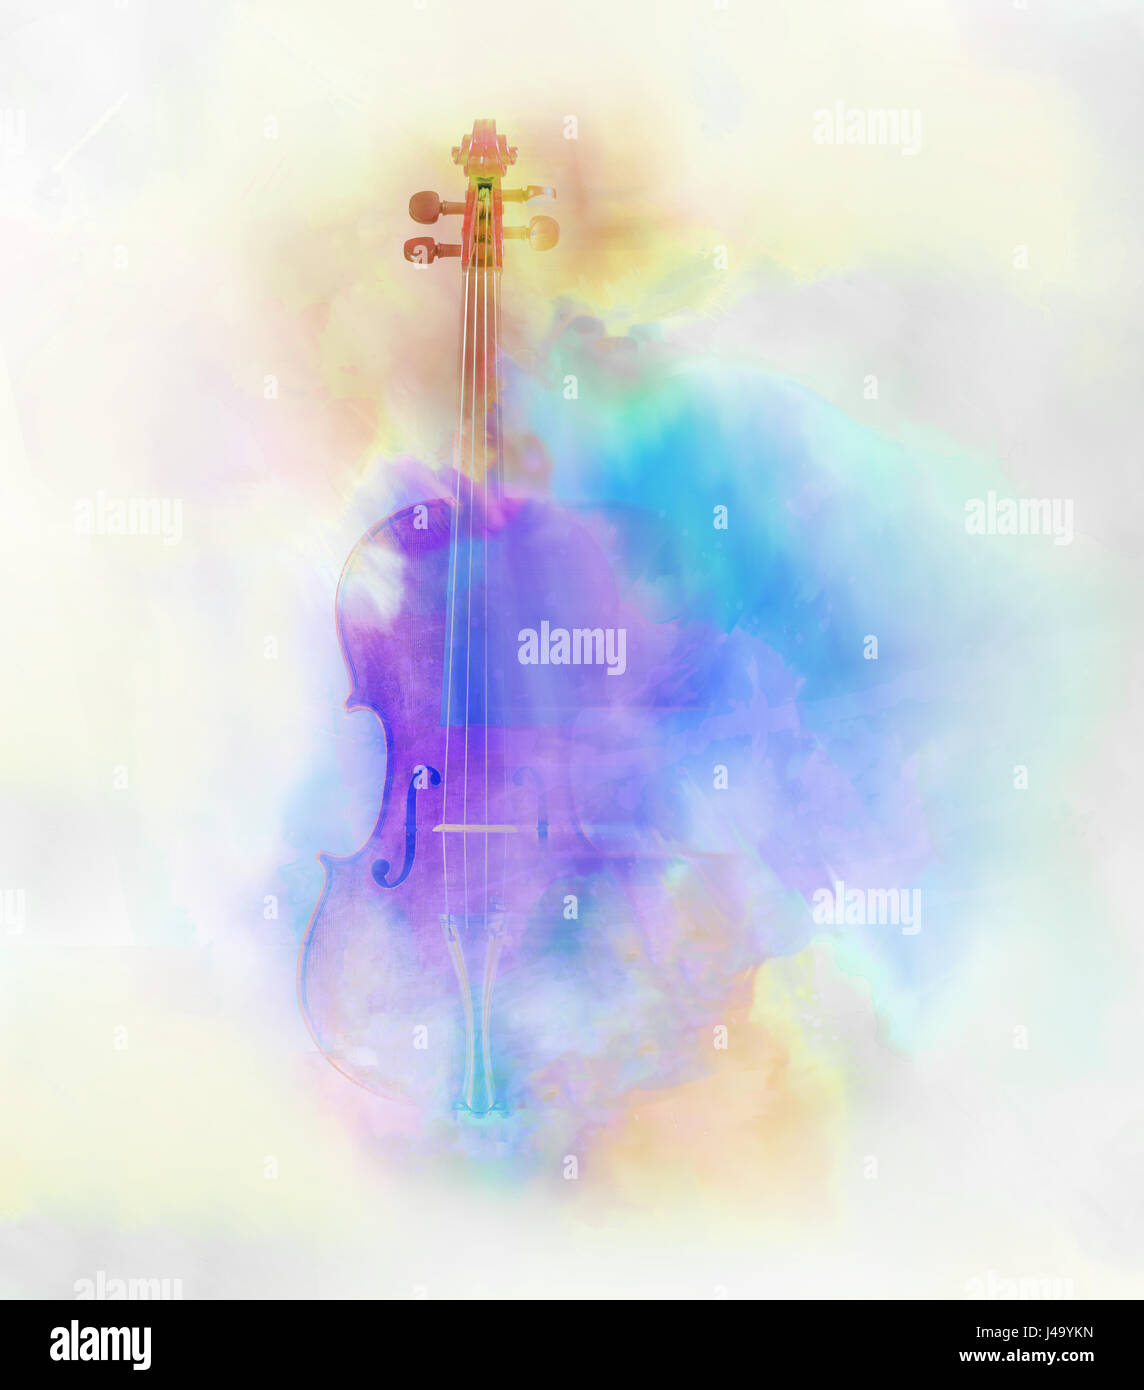 Imagen en color agua de un violín con una sensación de sueño. Foto de stock